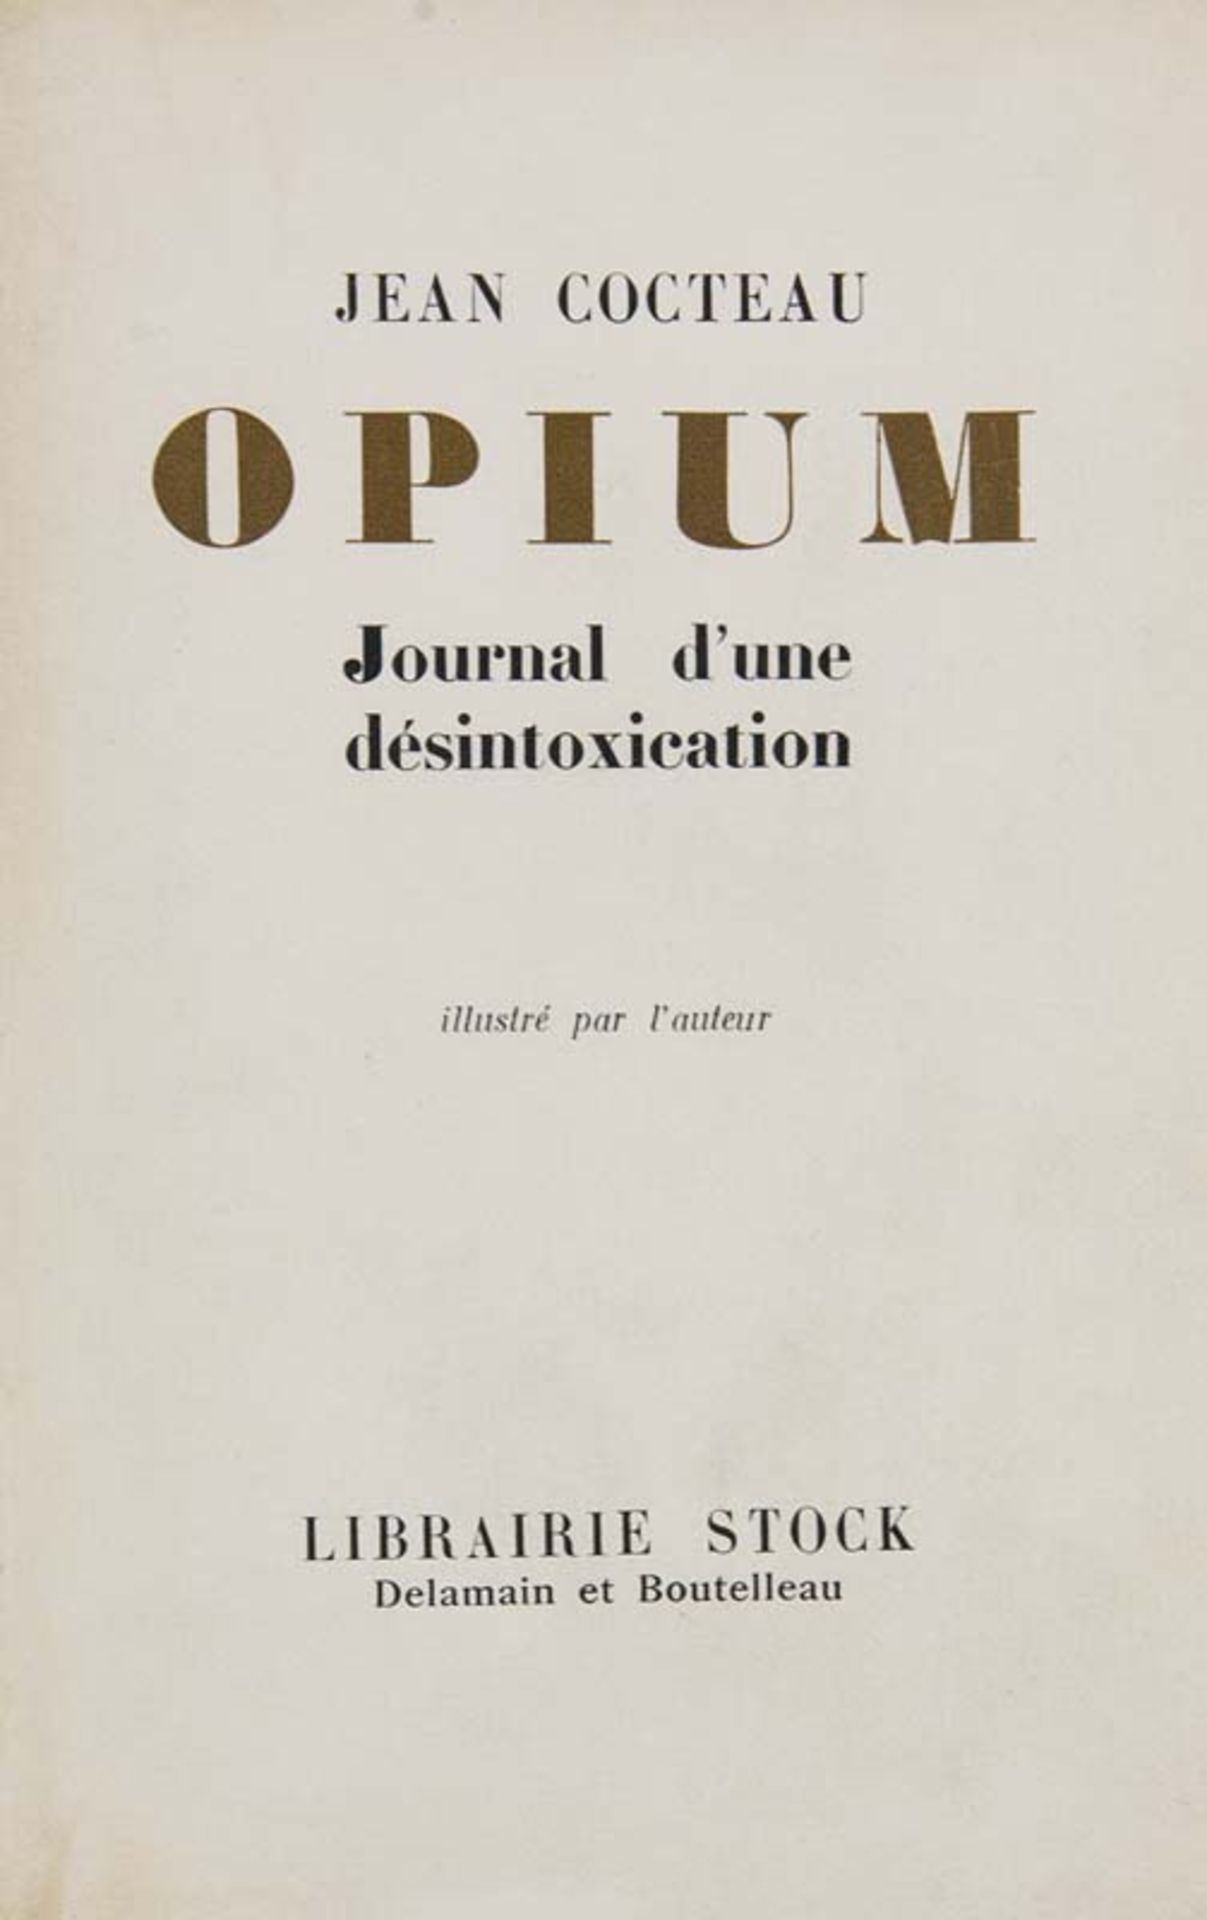 Cocteau, Jean. Opium. Journal d'une désintoxication. Dessins de l'Auteur. Mit 40 Zeichnungen und 3